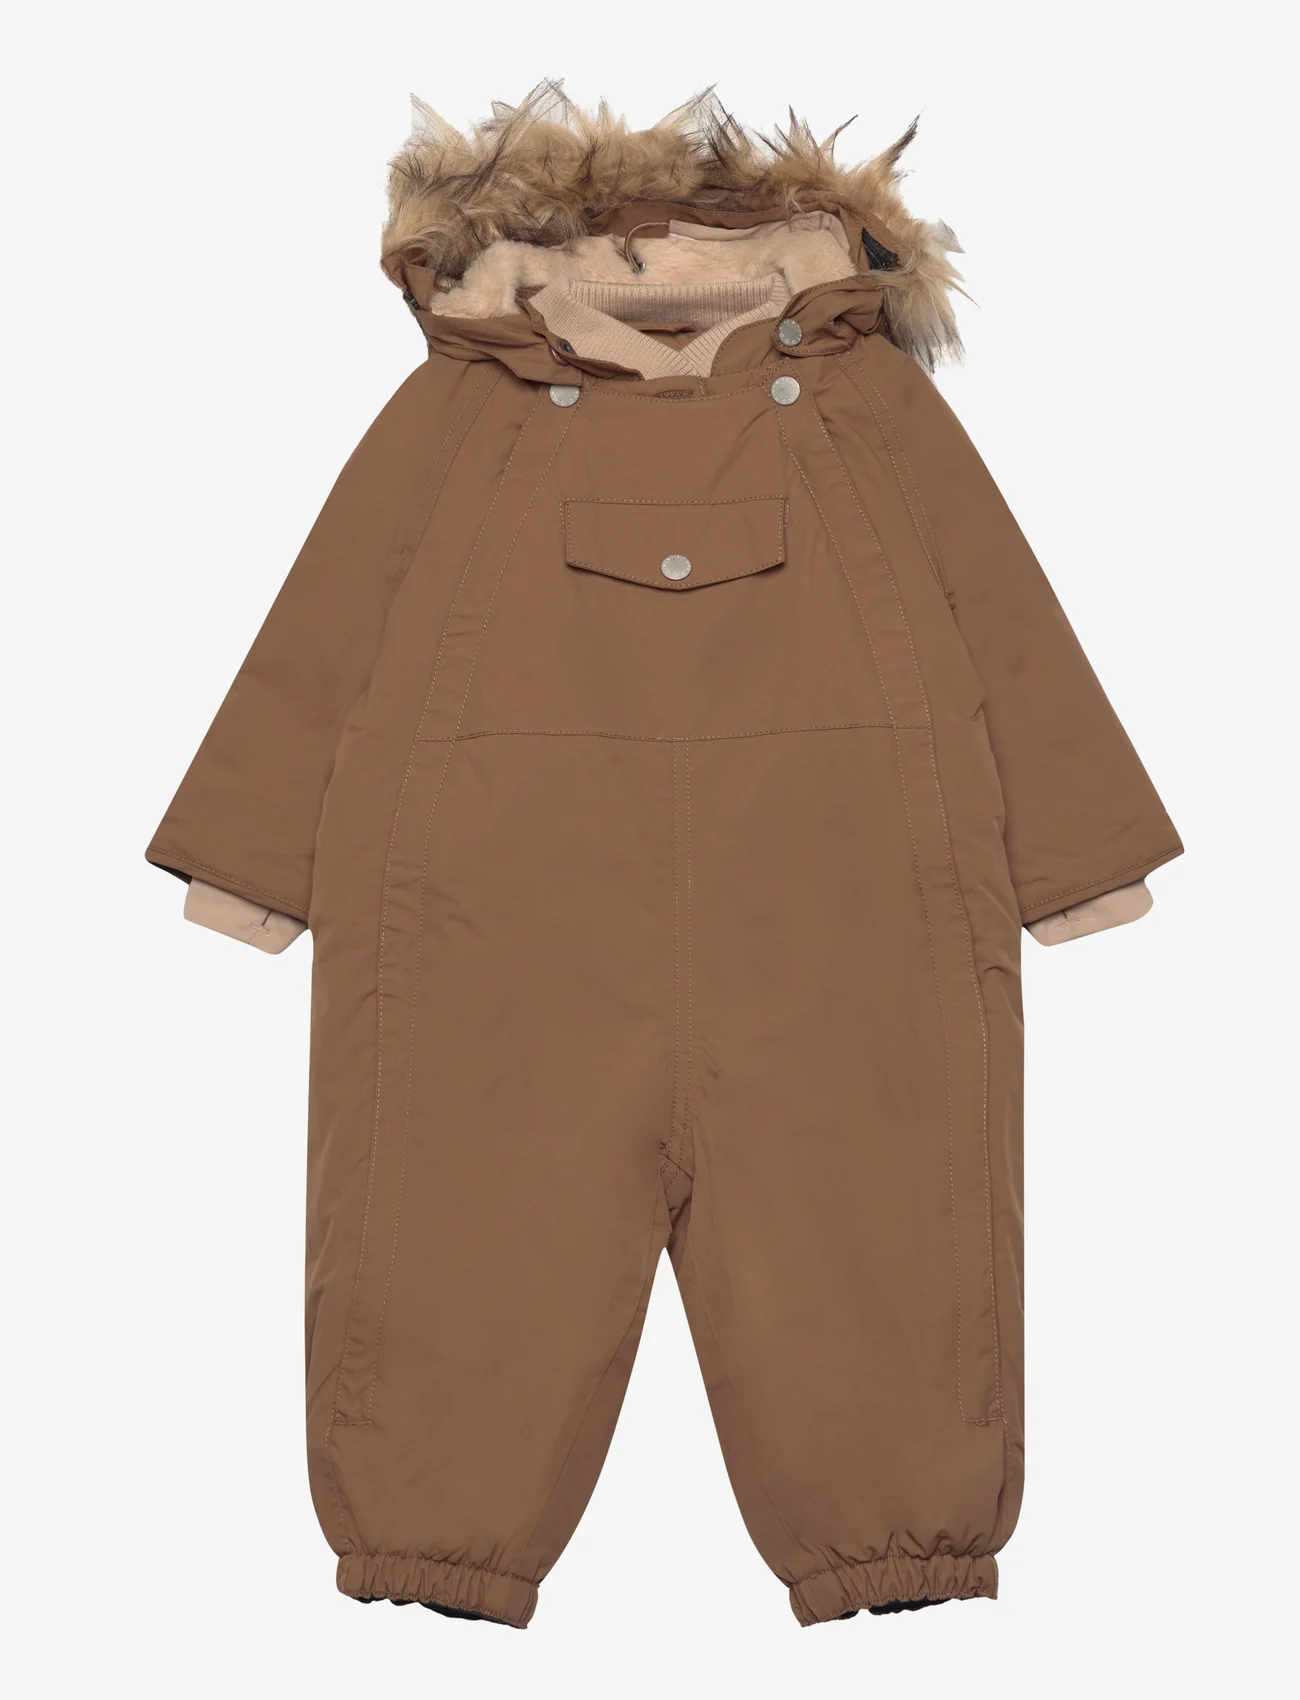 Mini A Ture - Wisti fleece lined snowsuit fake fur. GRS - børn - wood - 0